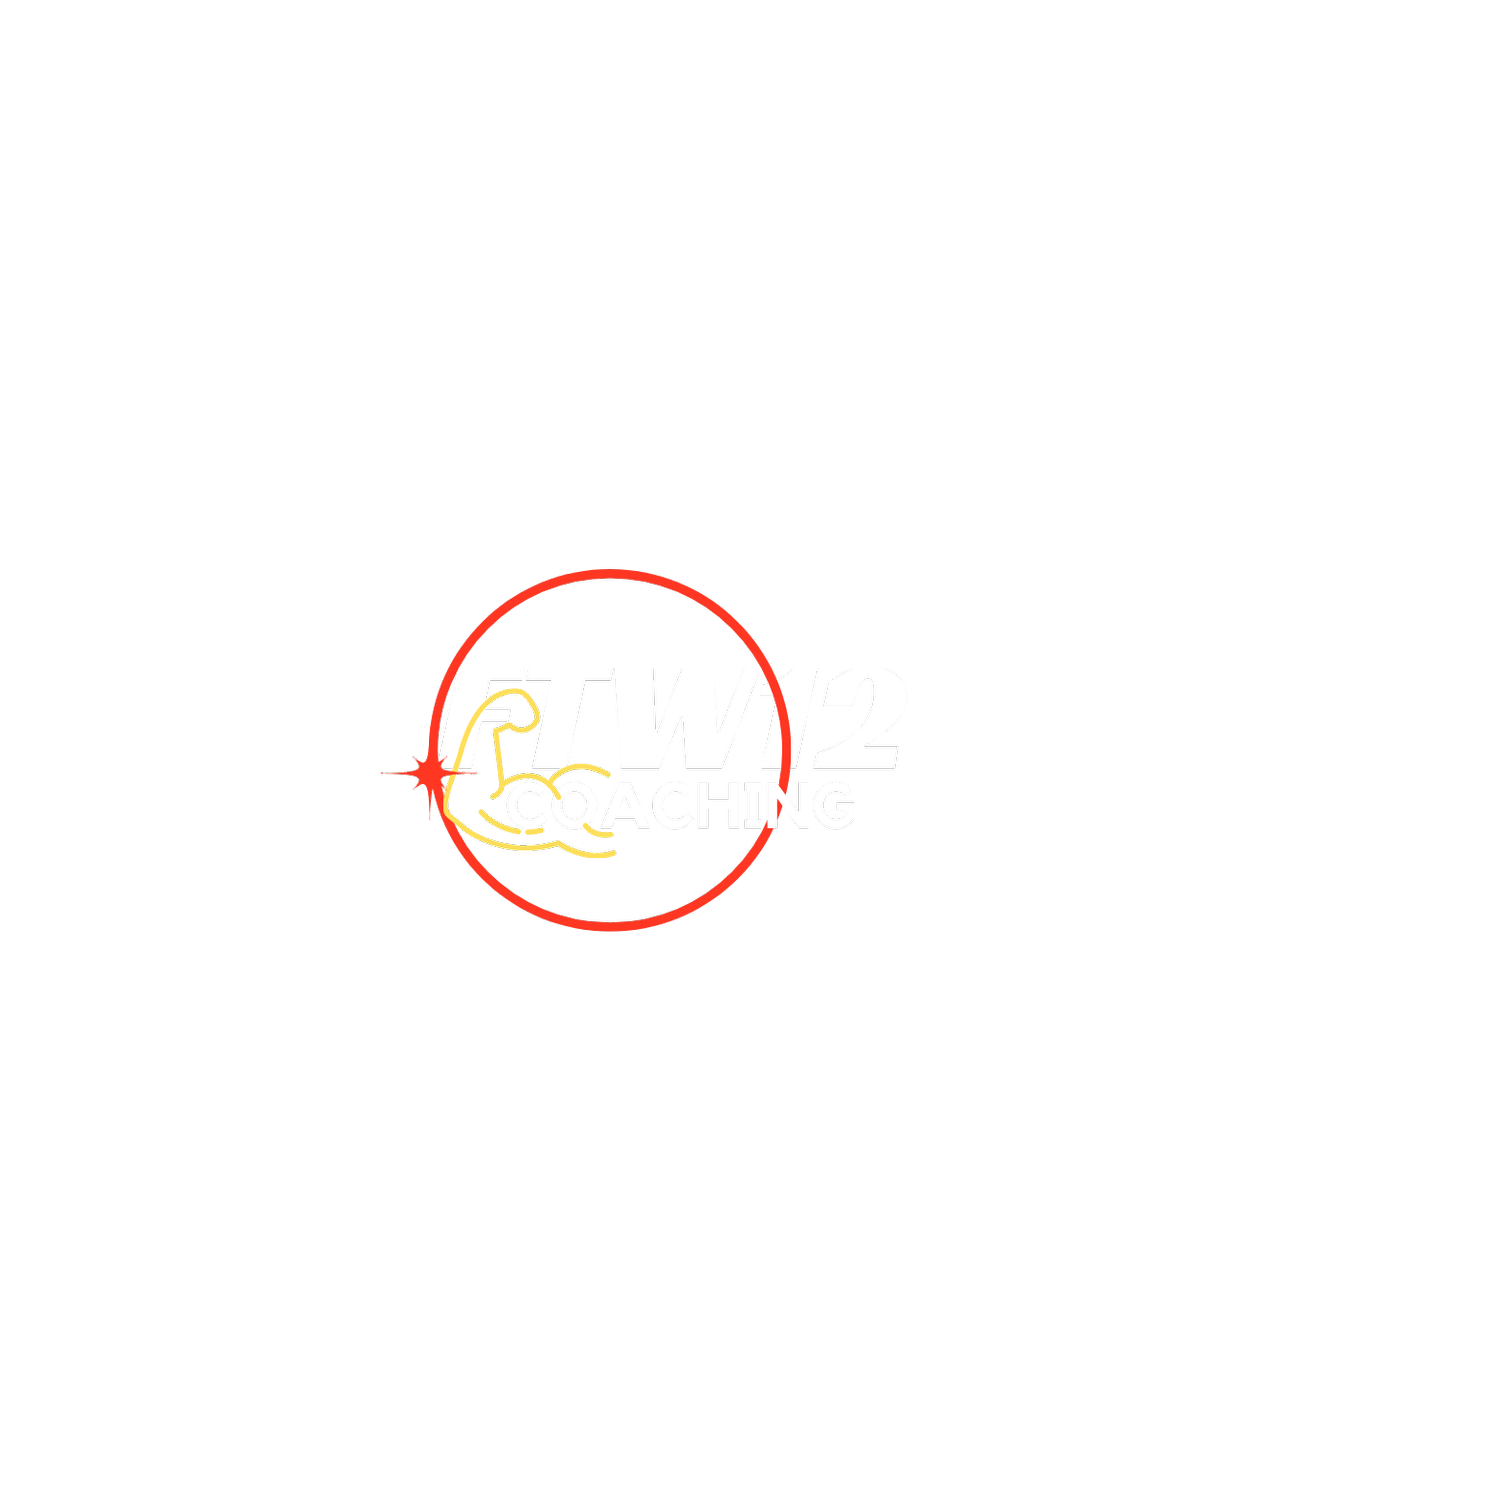 FTW12